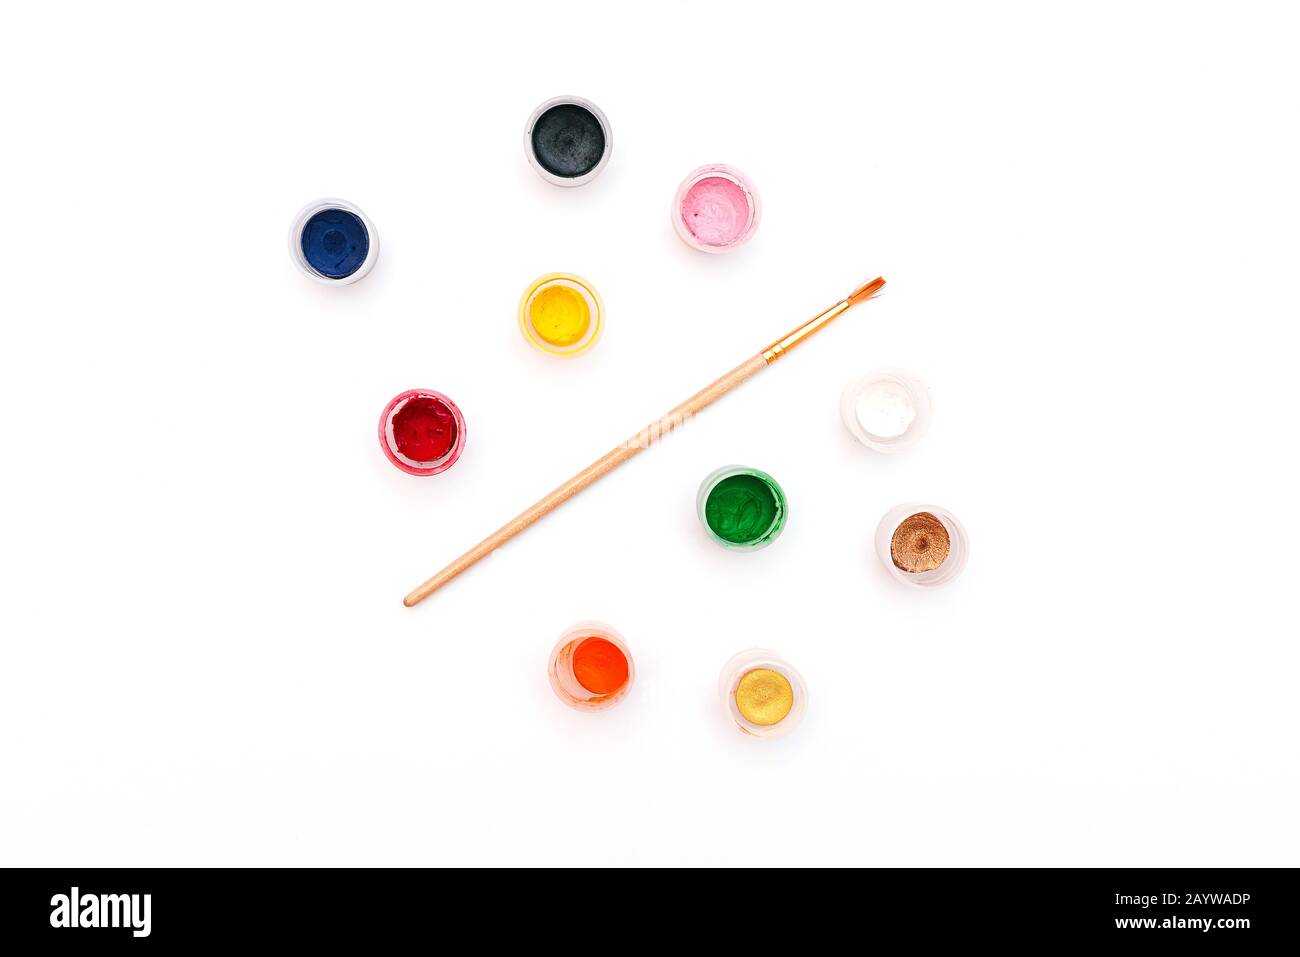 Vernici per pittura e pennello. Piccoli vasi di colori diversi su sfondo bianco. Foto Stock